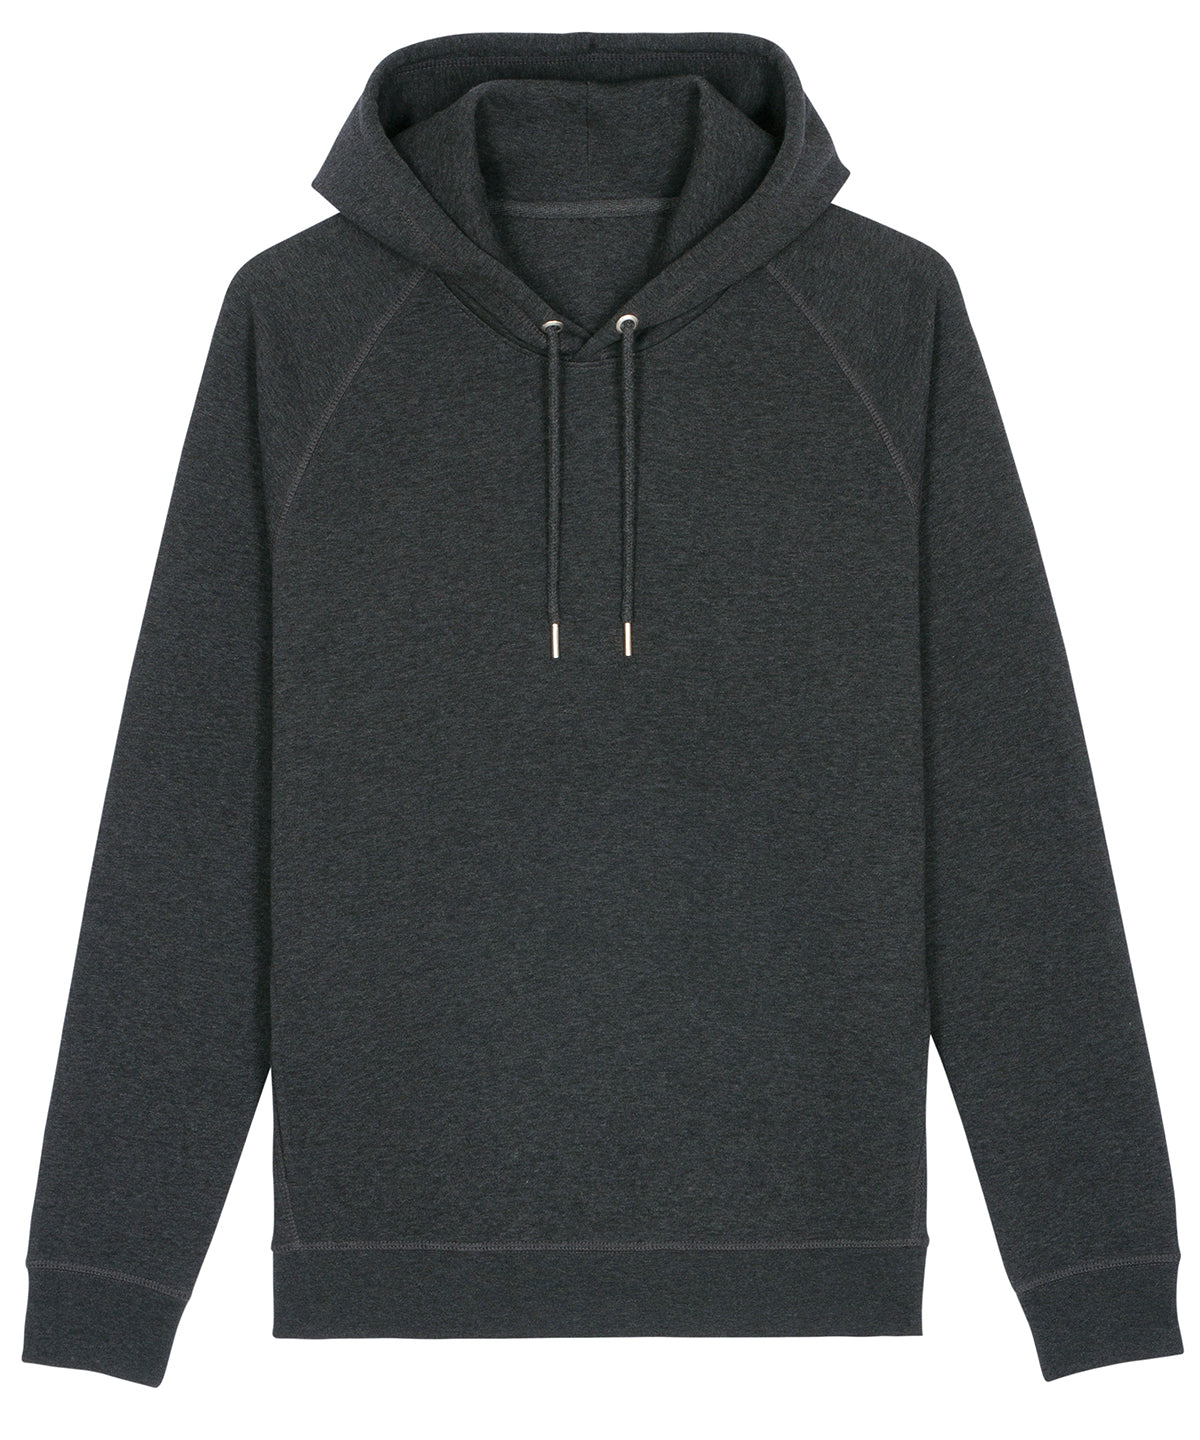 Personalised Hoodies - Black Stanley/Stella Sider unisex side pocket hoodie  (STSU824)